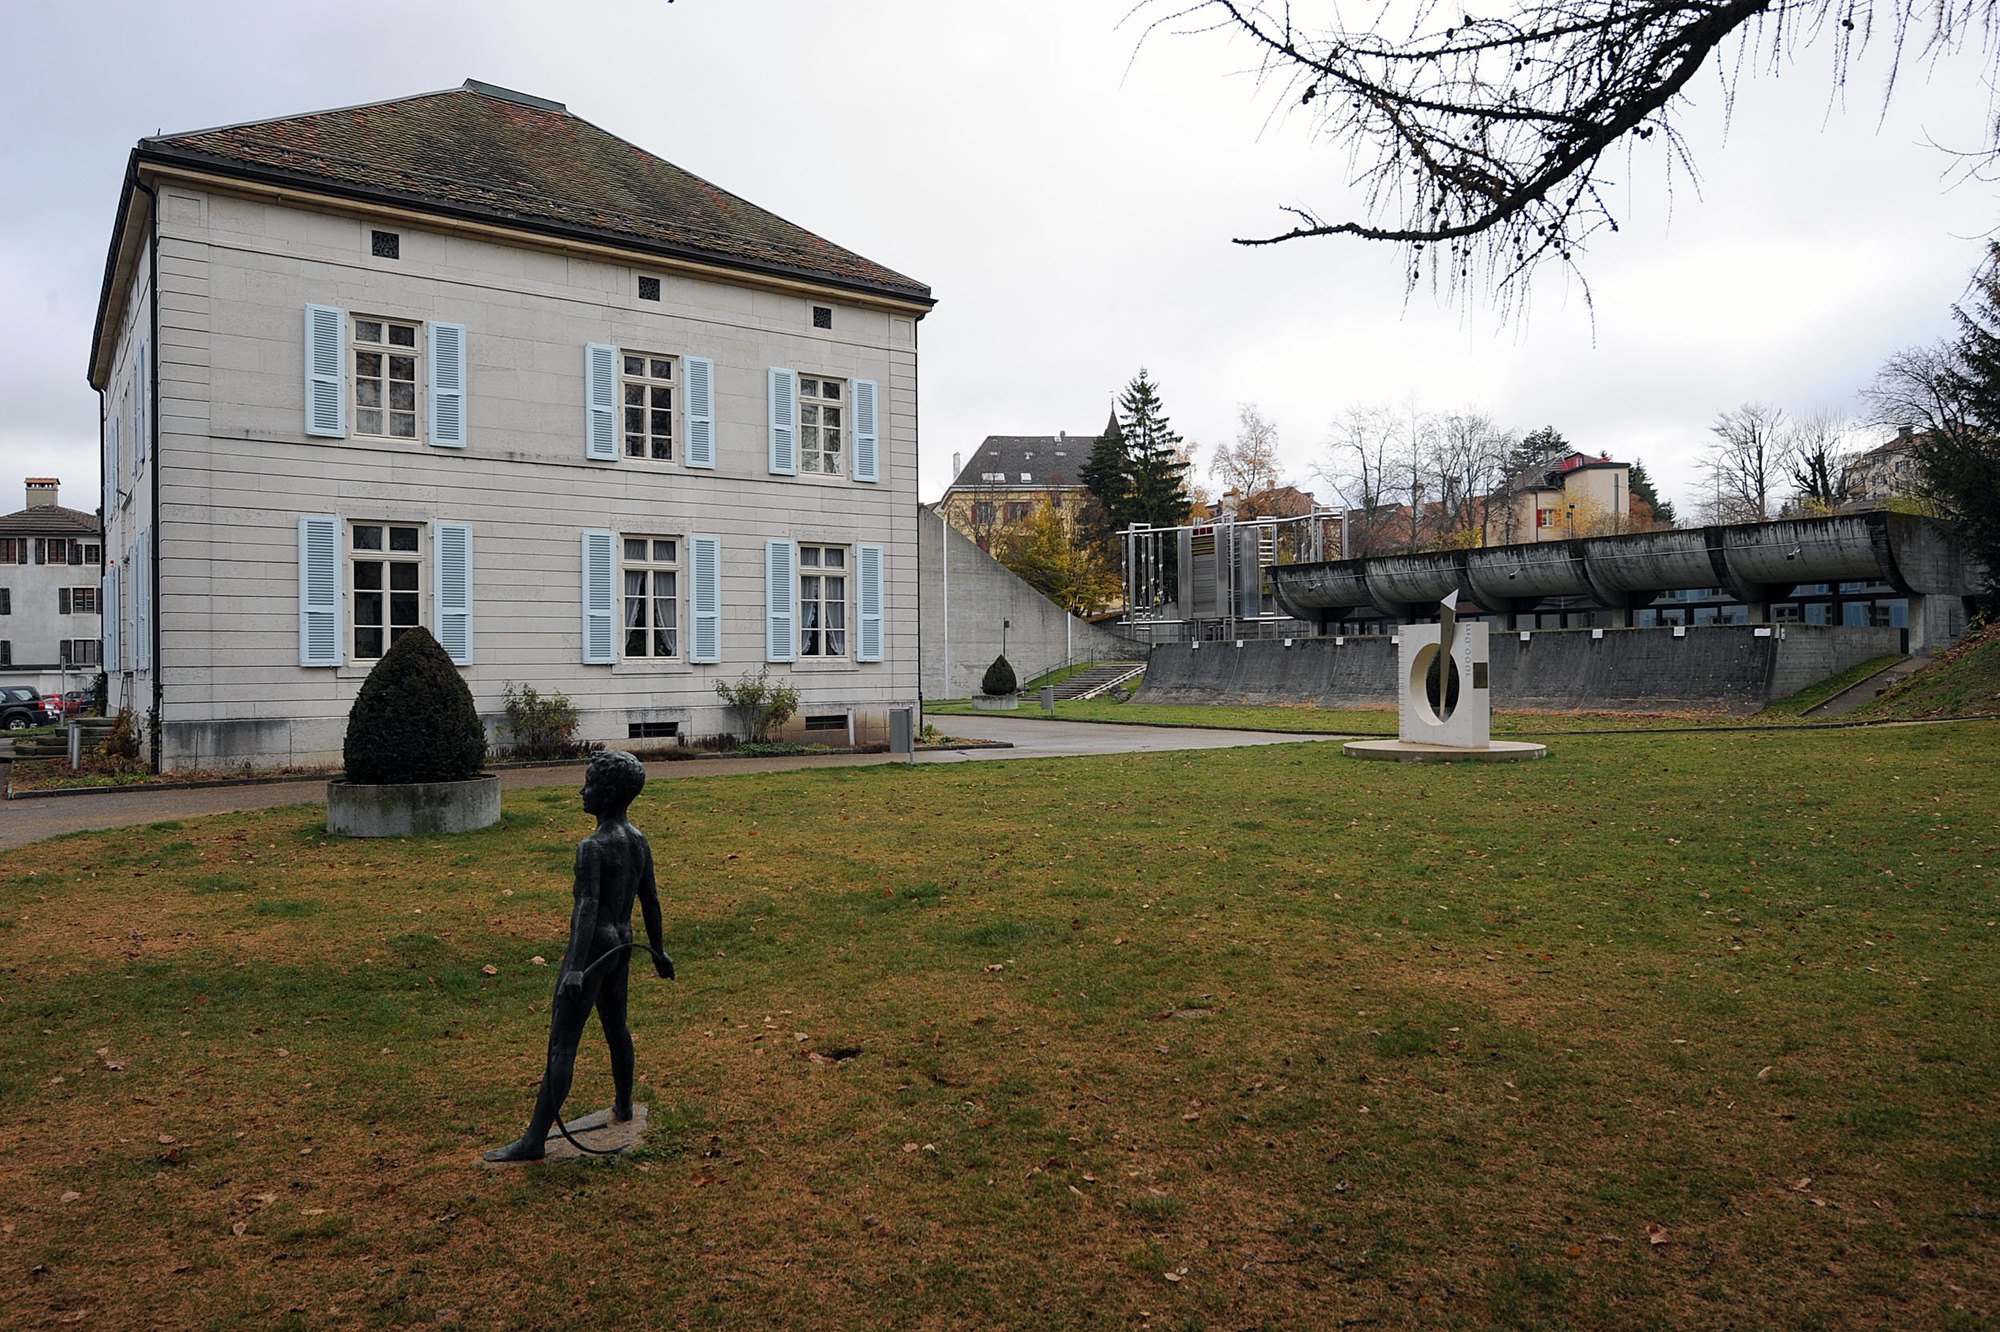 Le Musée d'histoire de la ville de La Chaux-de-Fonds souhaite développer son inclusivité et proposer des expositions accessibles aux personnes en situation de handicap mental.